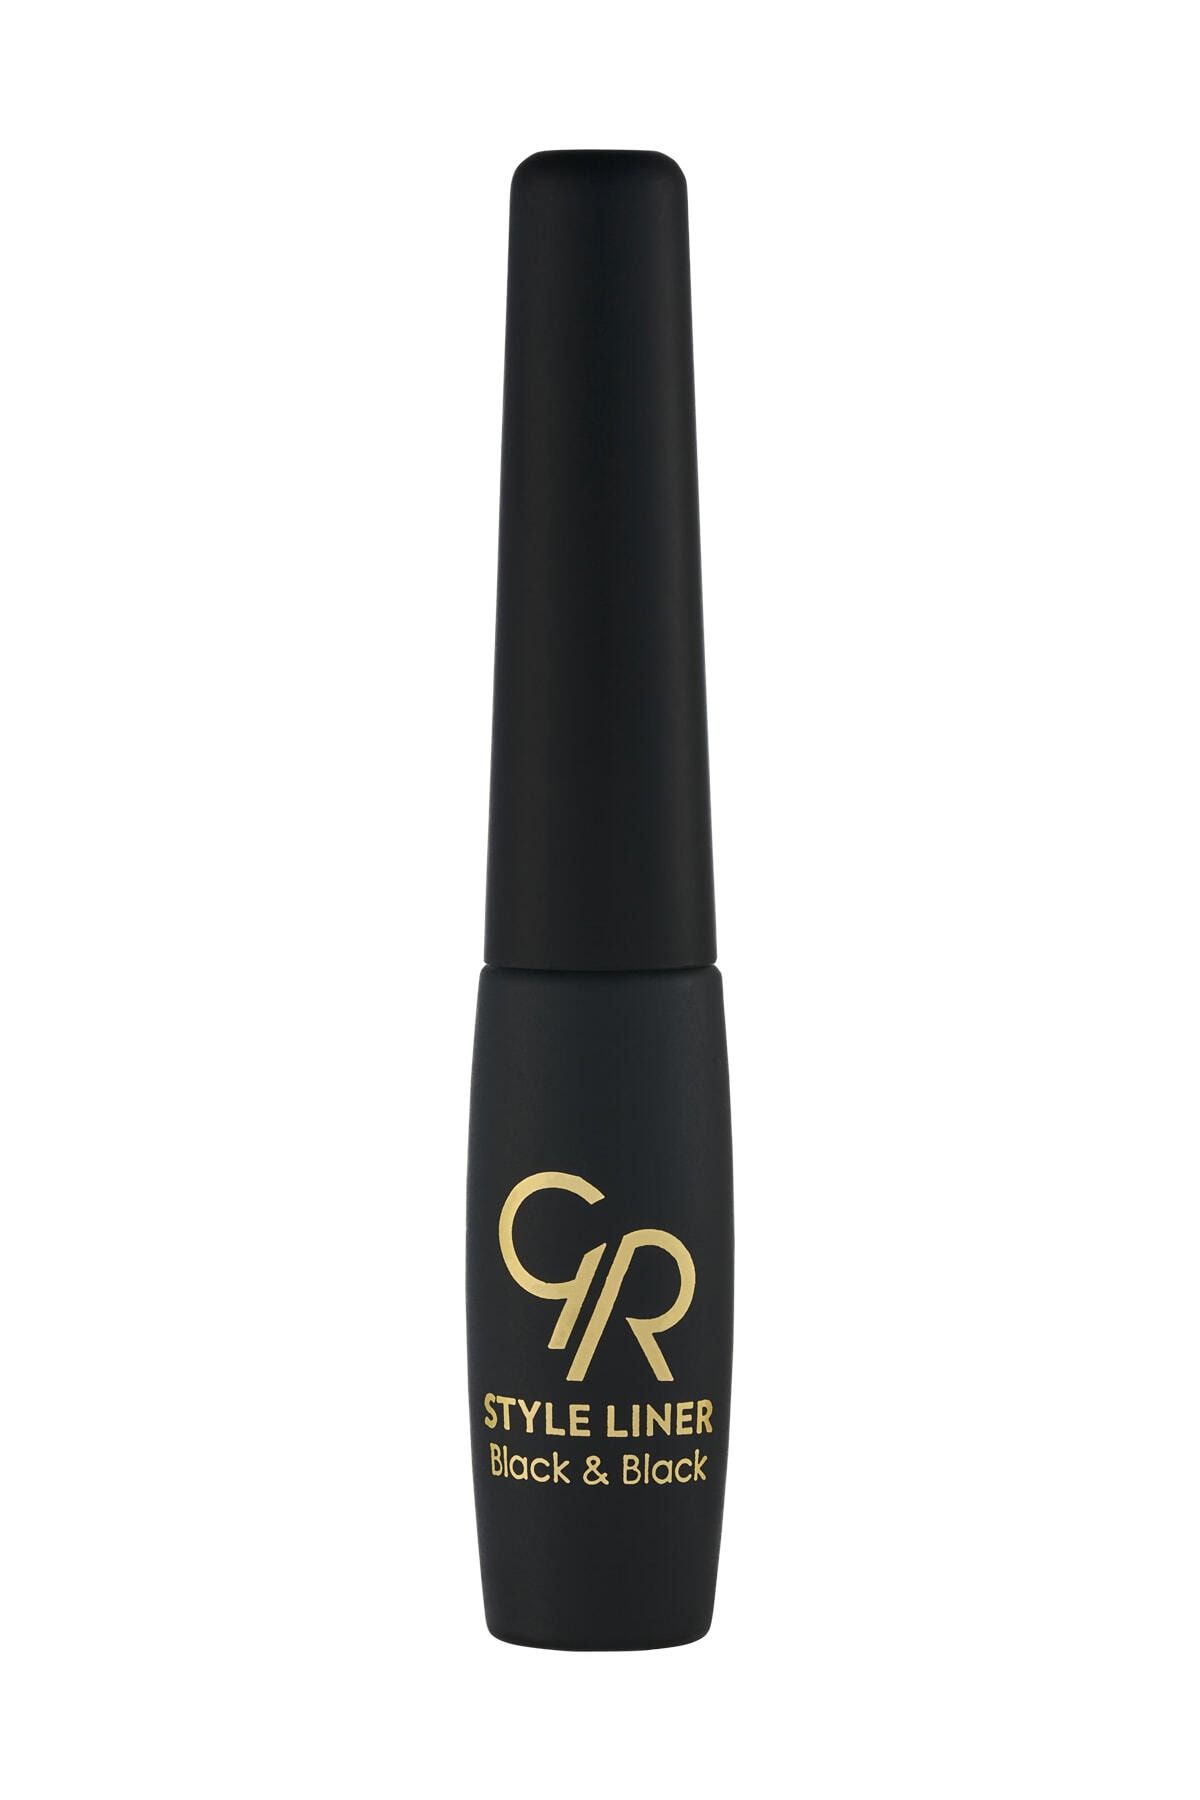 Golden Rose Metalik Siyah Eyeliner - Style Liner No: 14 8691190170141